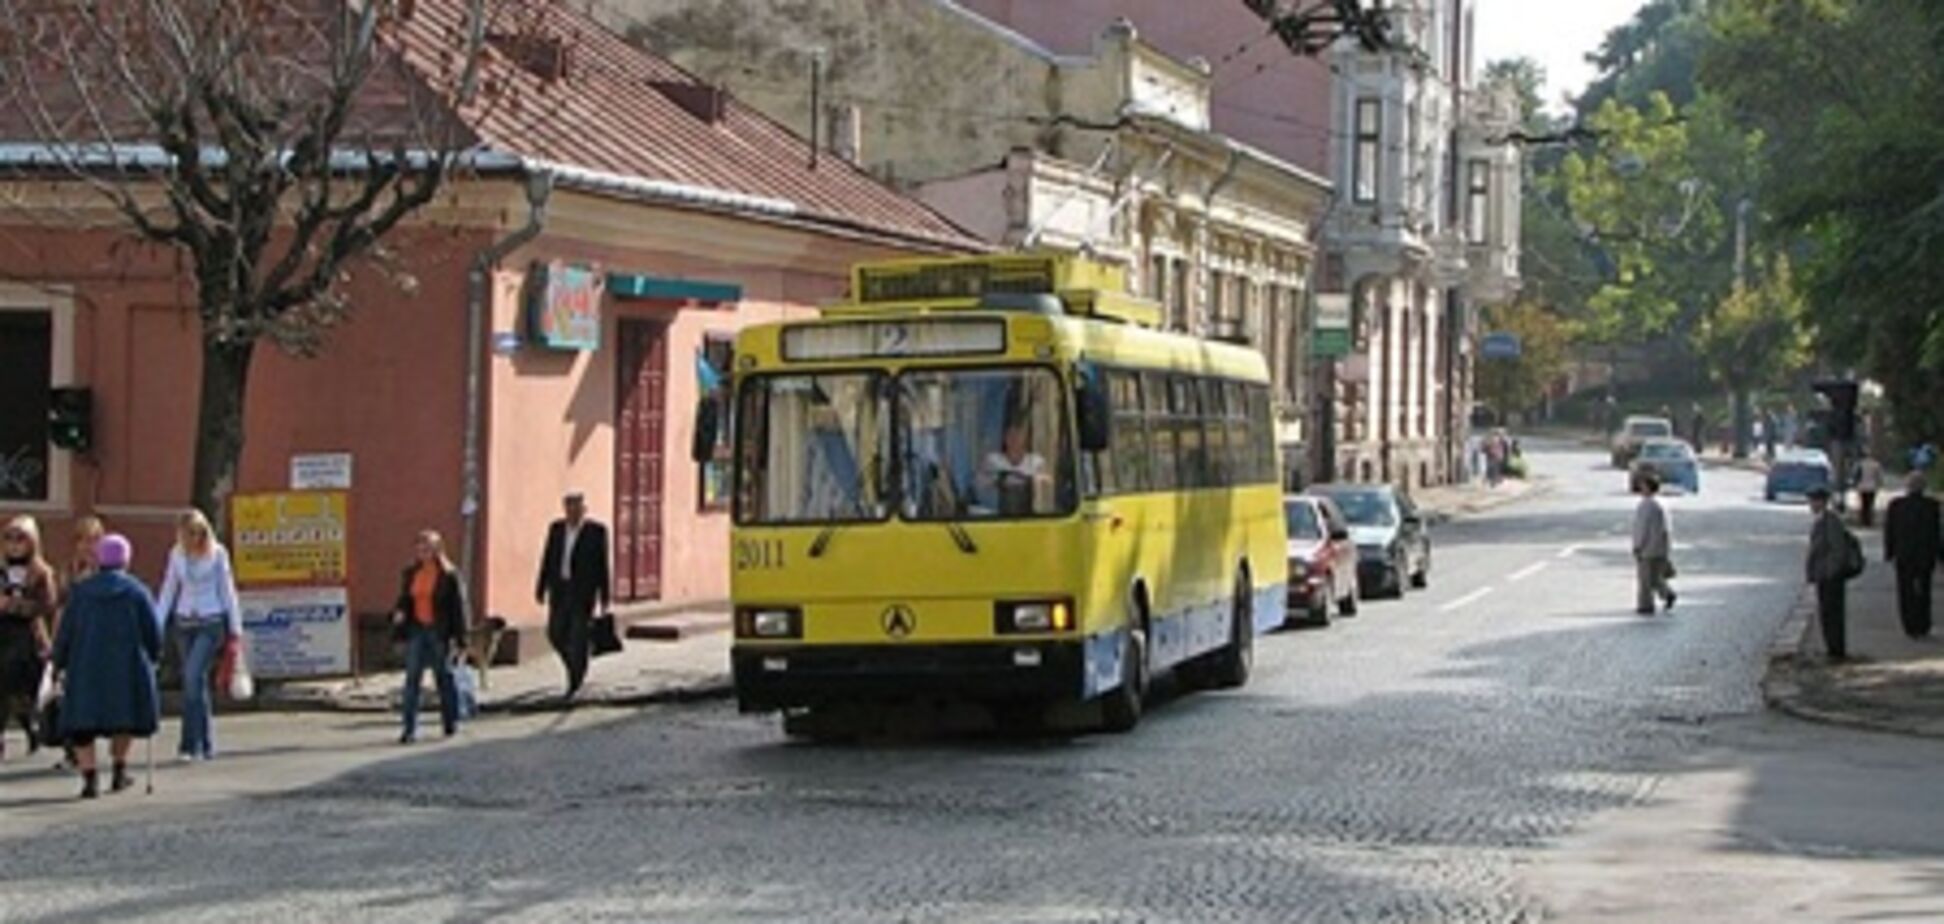 Тролейбус покалічив пасажира в Чернівцях